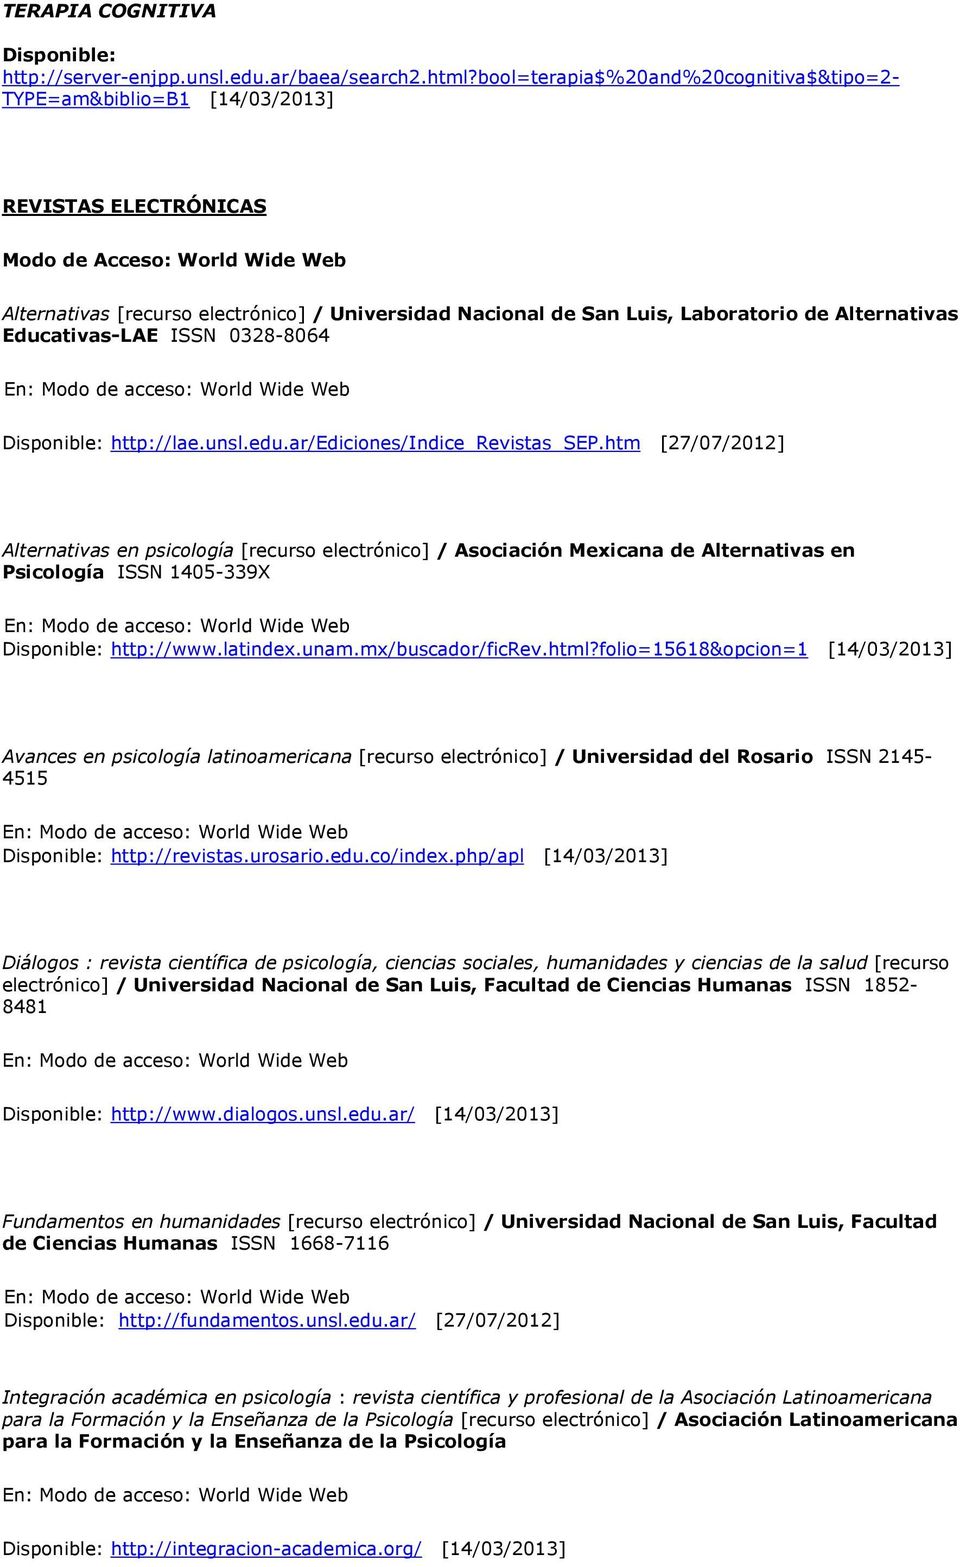 Educativas-LAE ISSN 0328-8064 http://lae.unsl.edu.ar/ediciones/indice_revistas_sep.